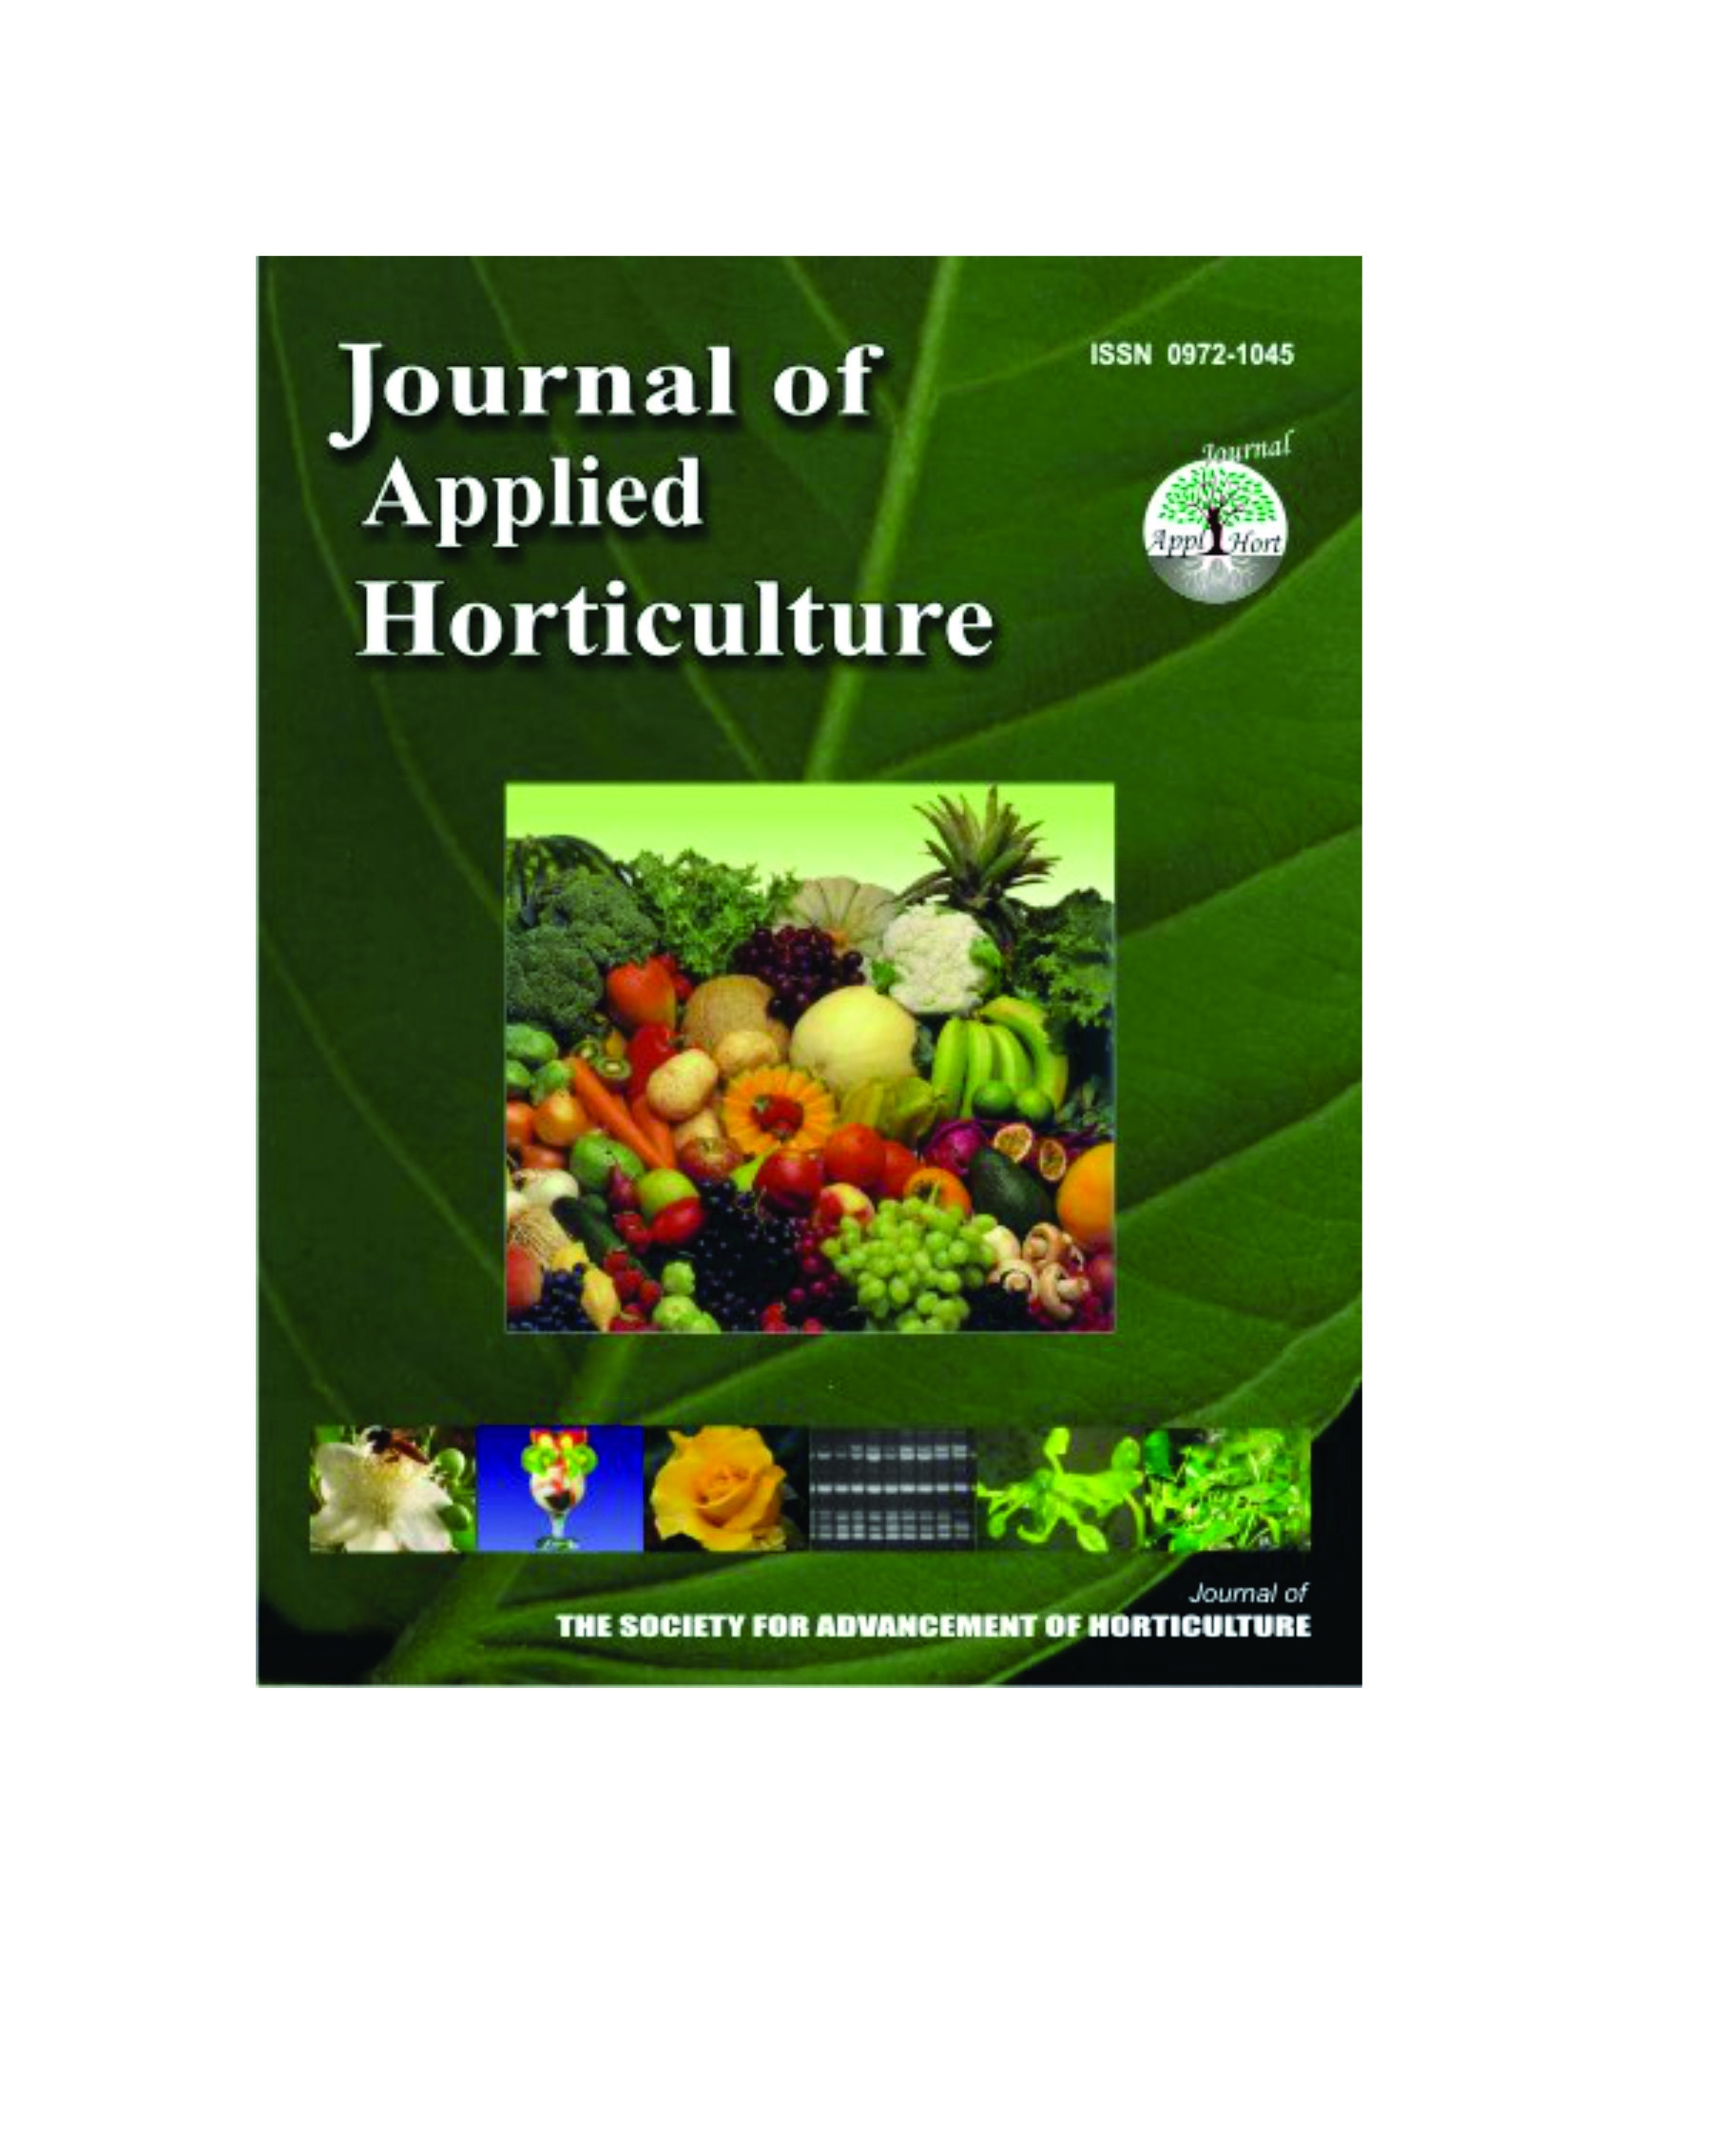 Gartenbauwissenschaftliche Zeitschriften